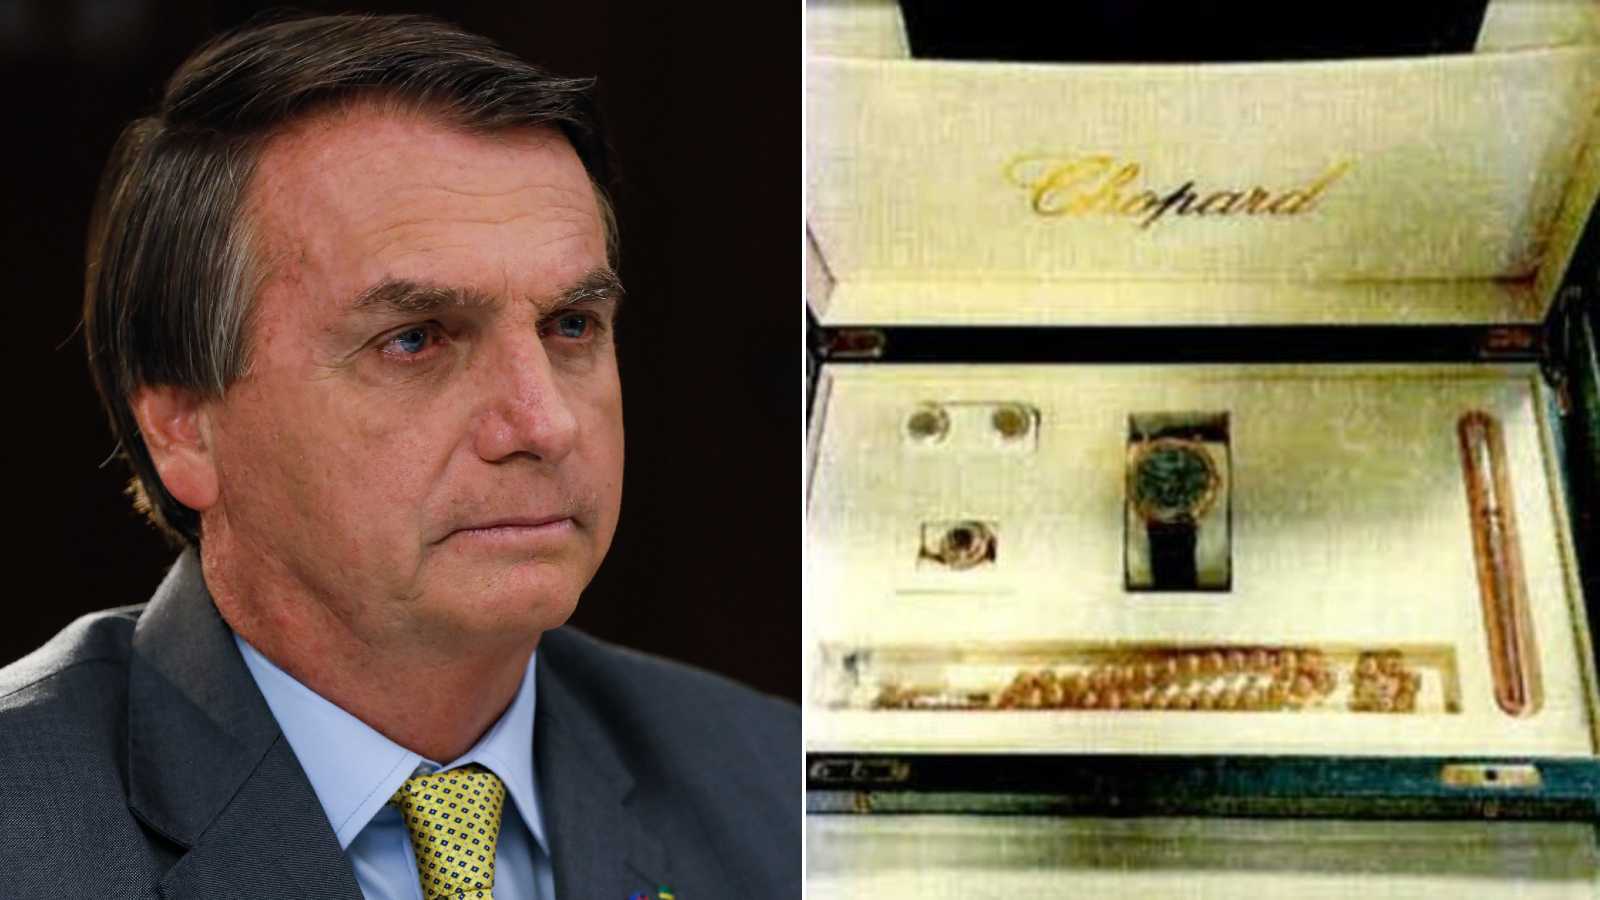 Bolsonaro poderá depor nesta quarta na Polícia Federal em Brasília